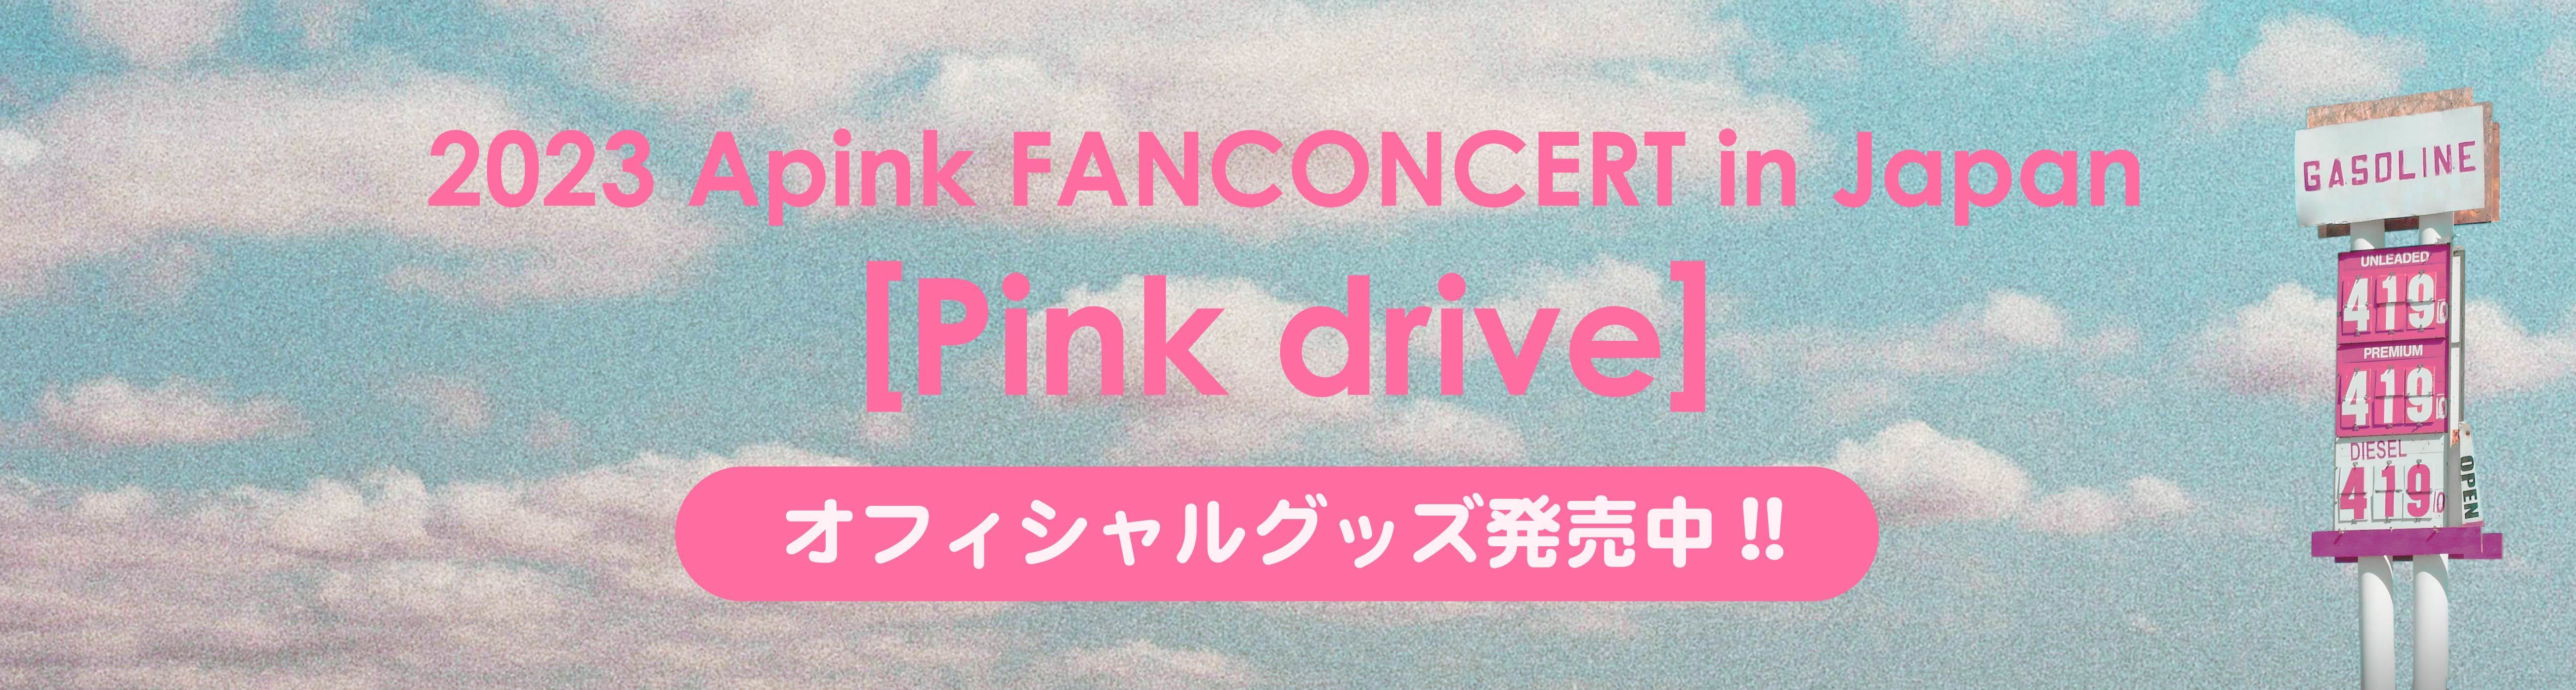 【バナー】STORE / Pink drive